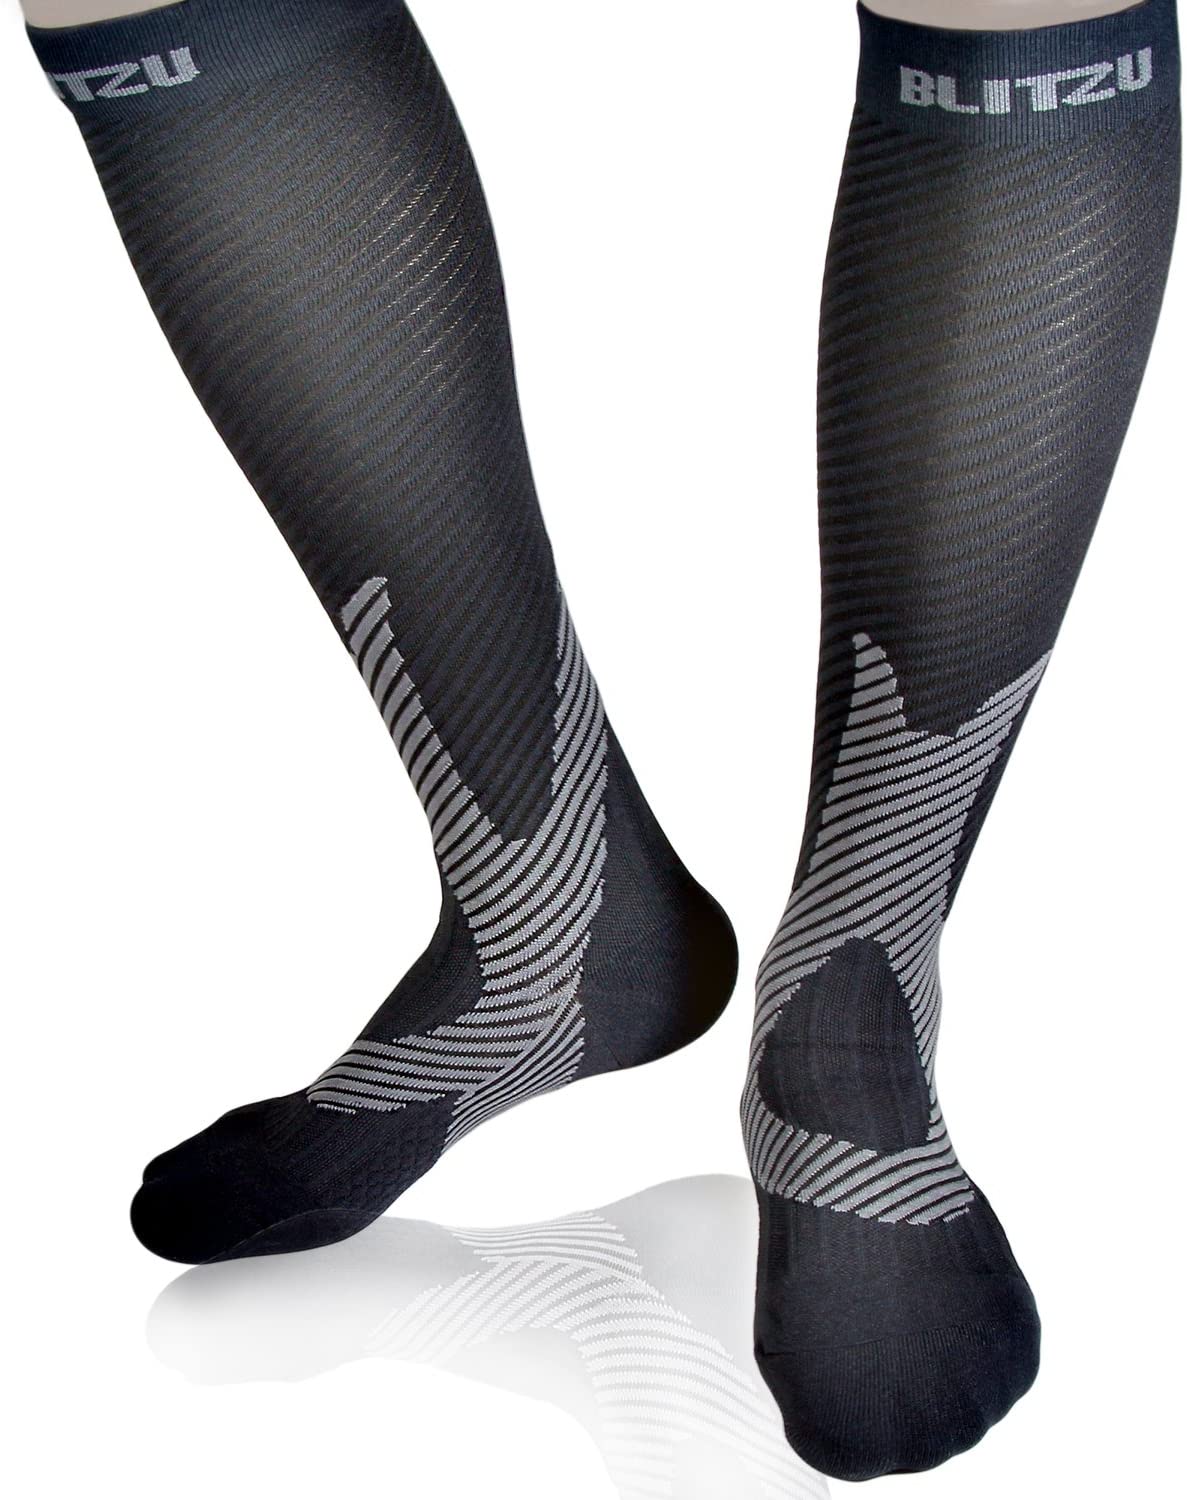 BLITZU Compression Socks For Men 